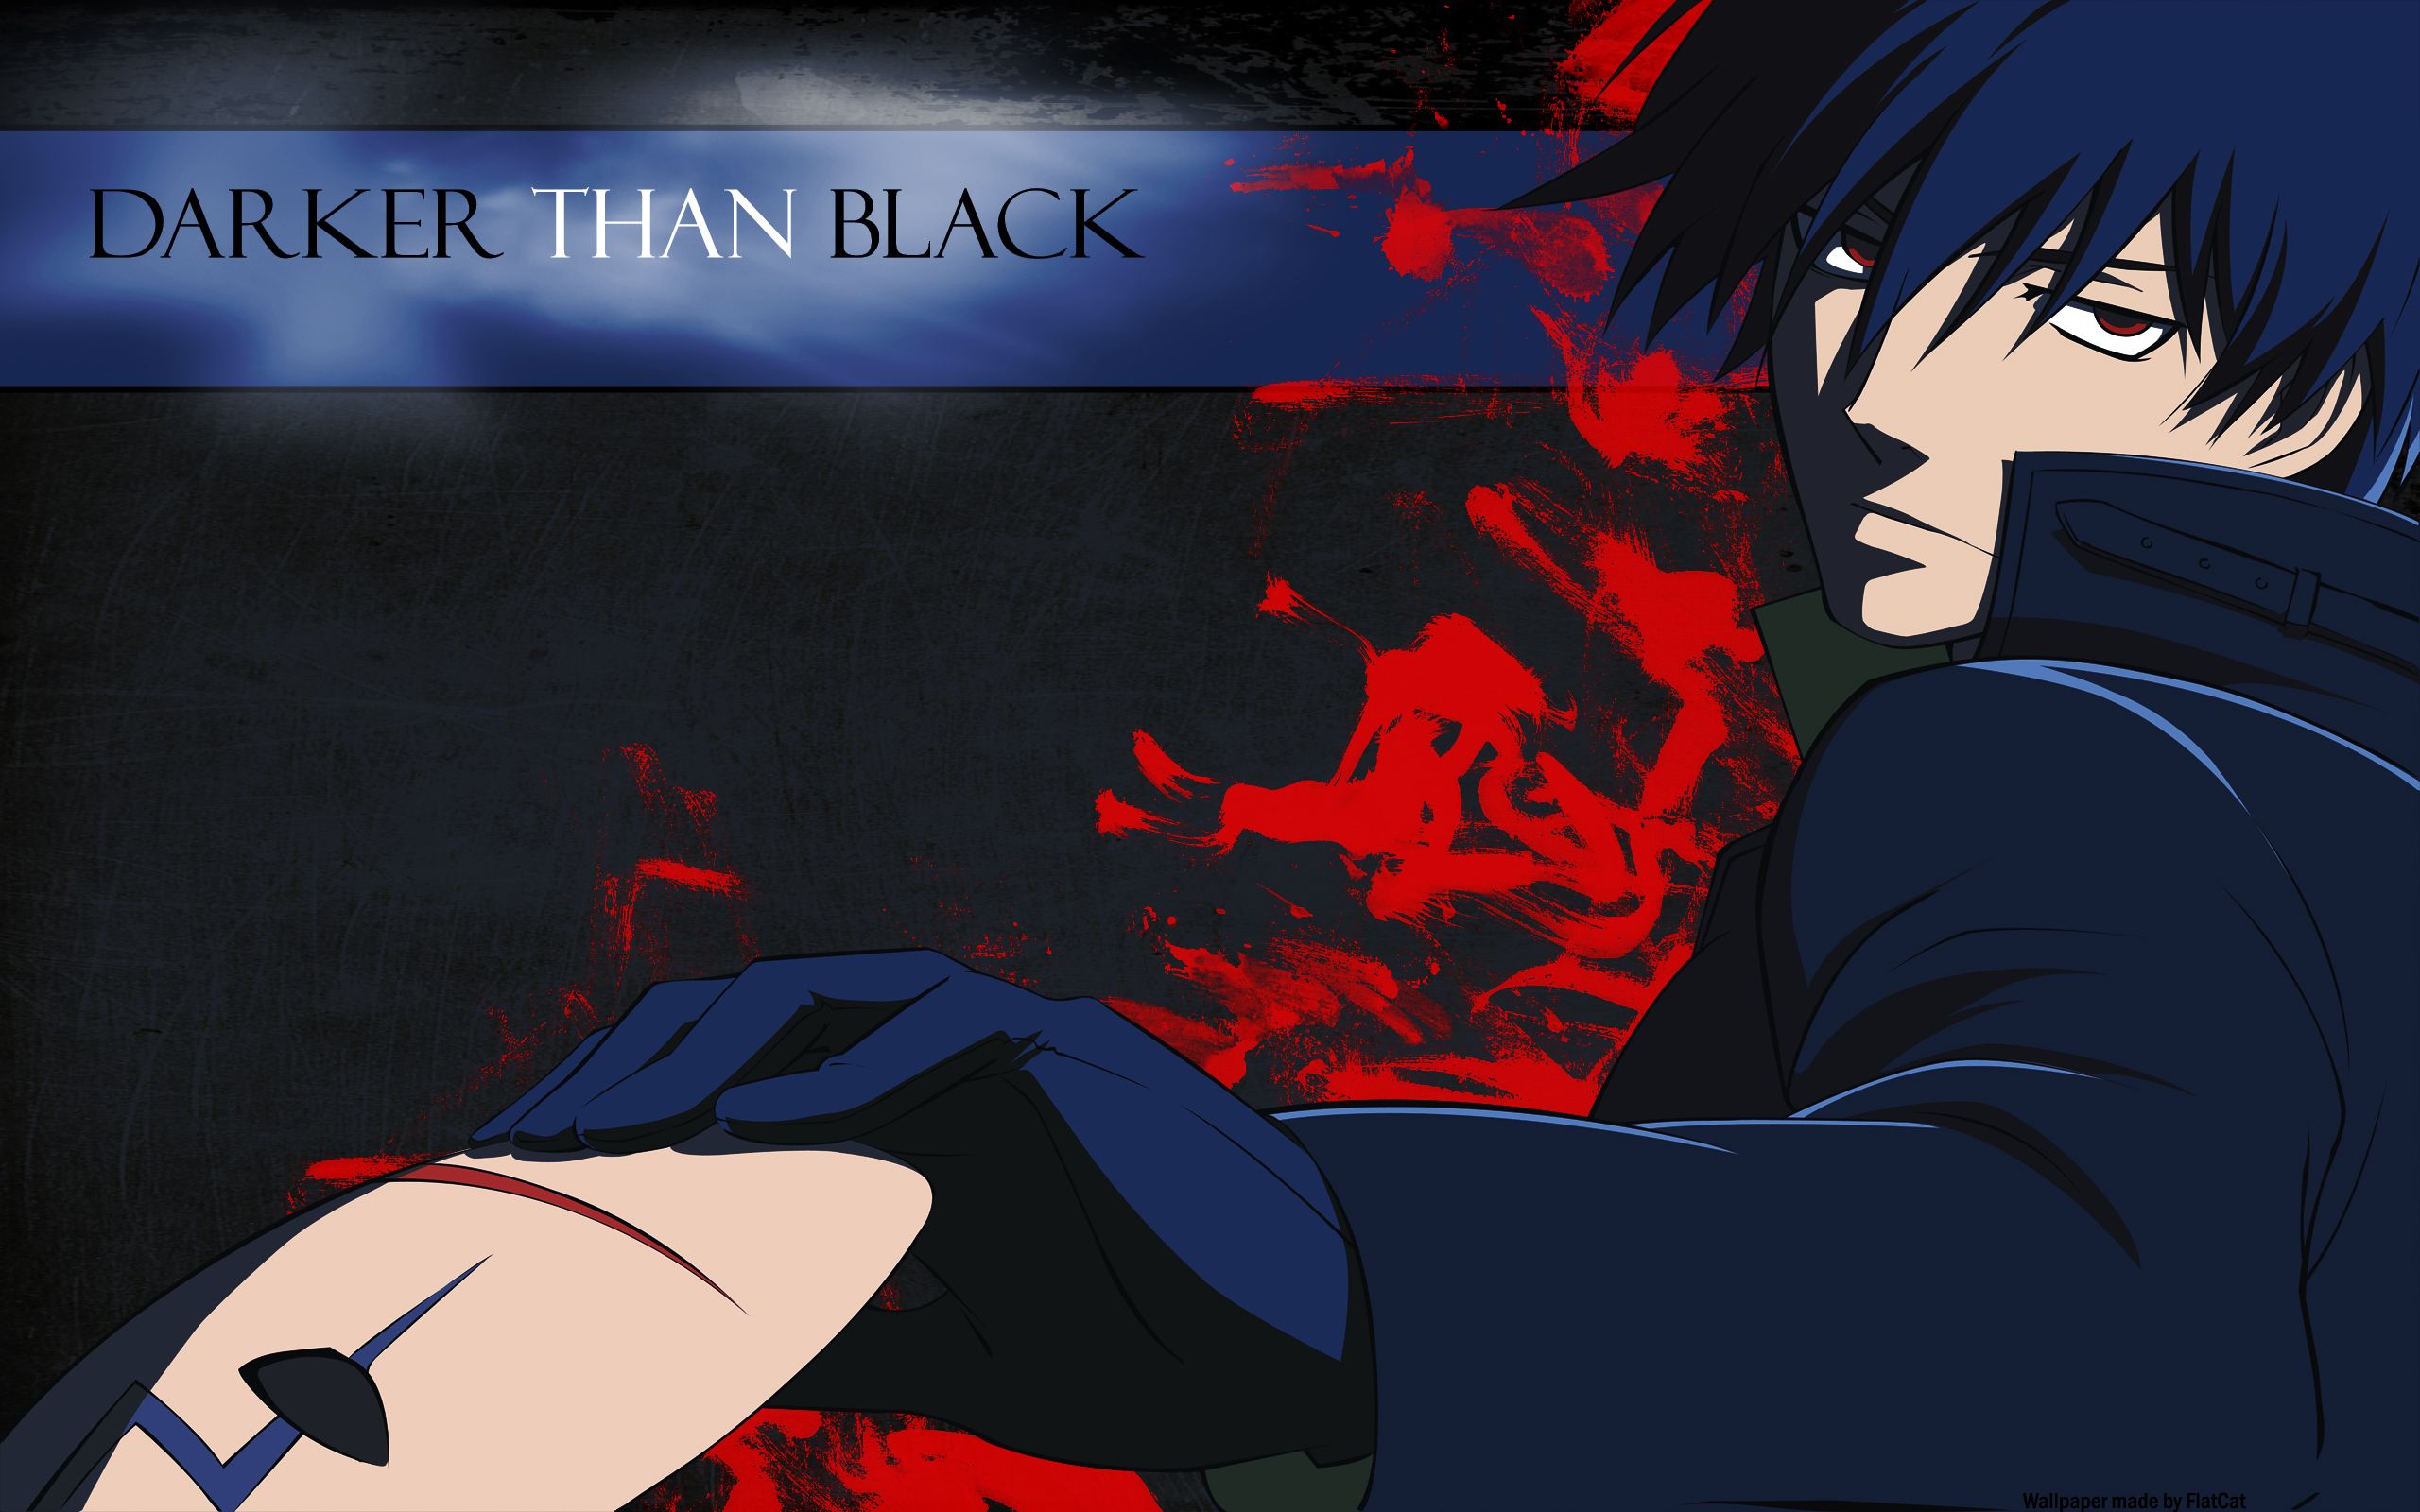 Hei Darker Than Black, manga, hei, darker than black, anime, HD